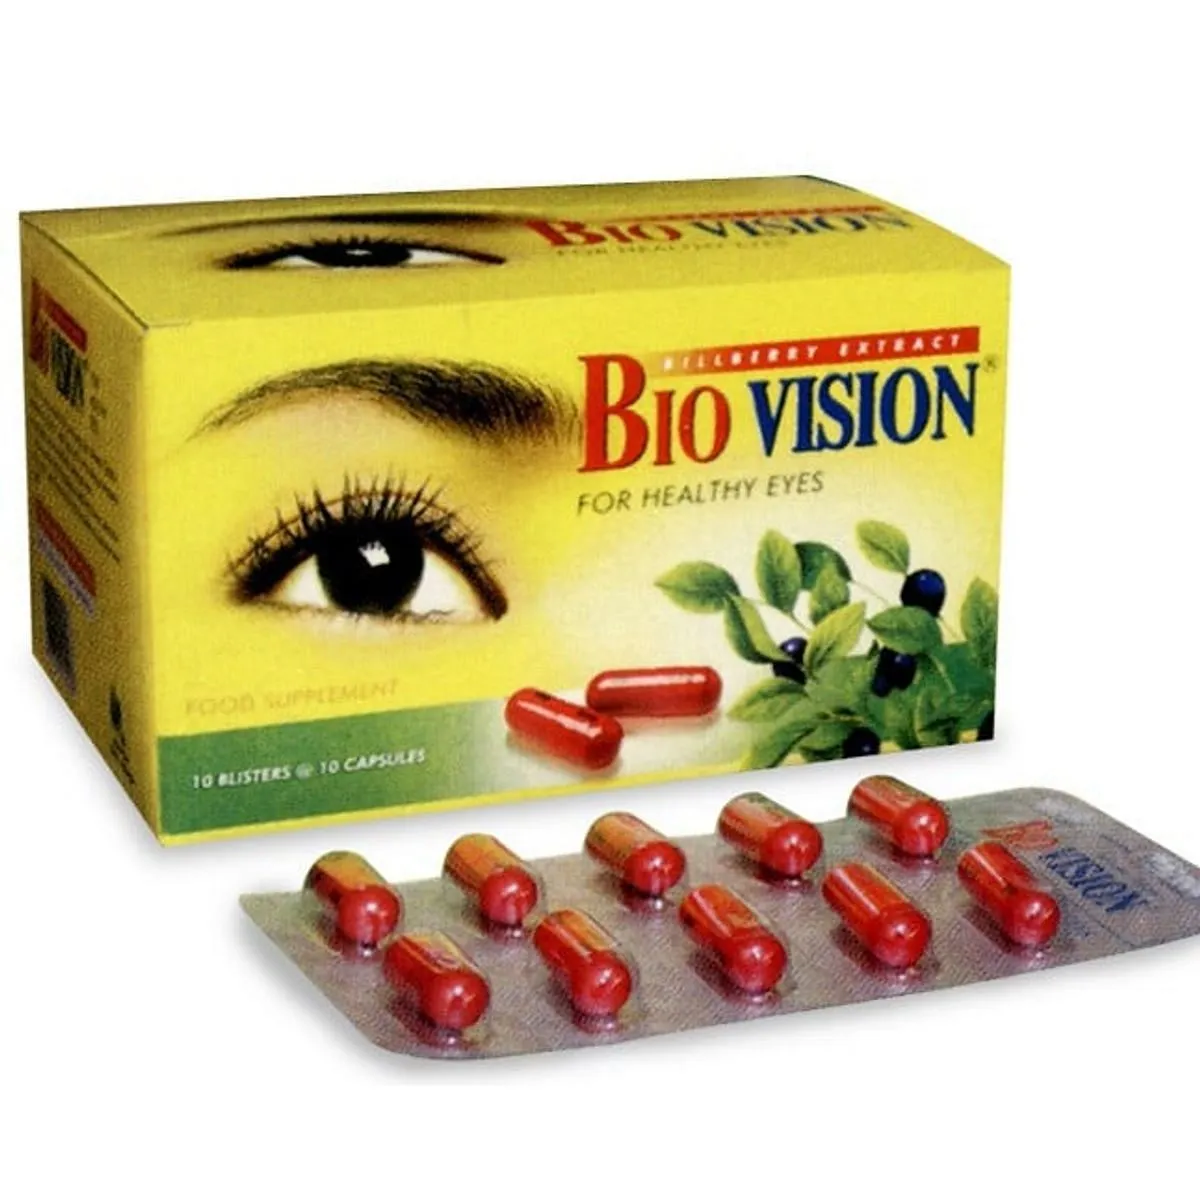 Meningkatkan Penglihatan: Peran Penting Vitamin dan Mineral